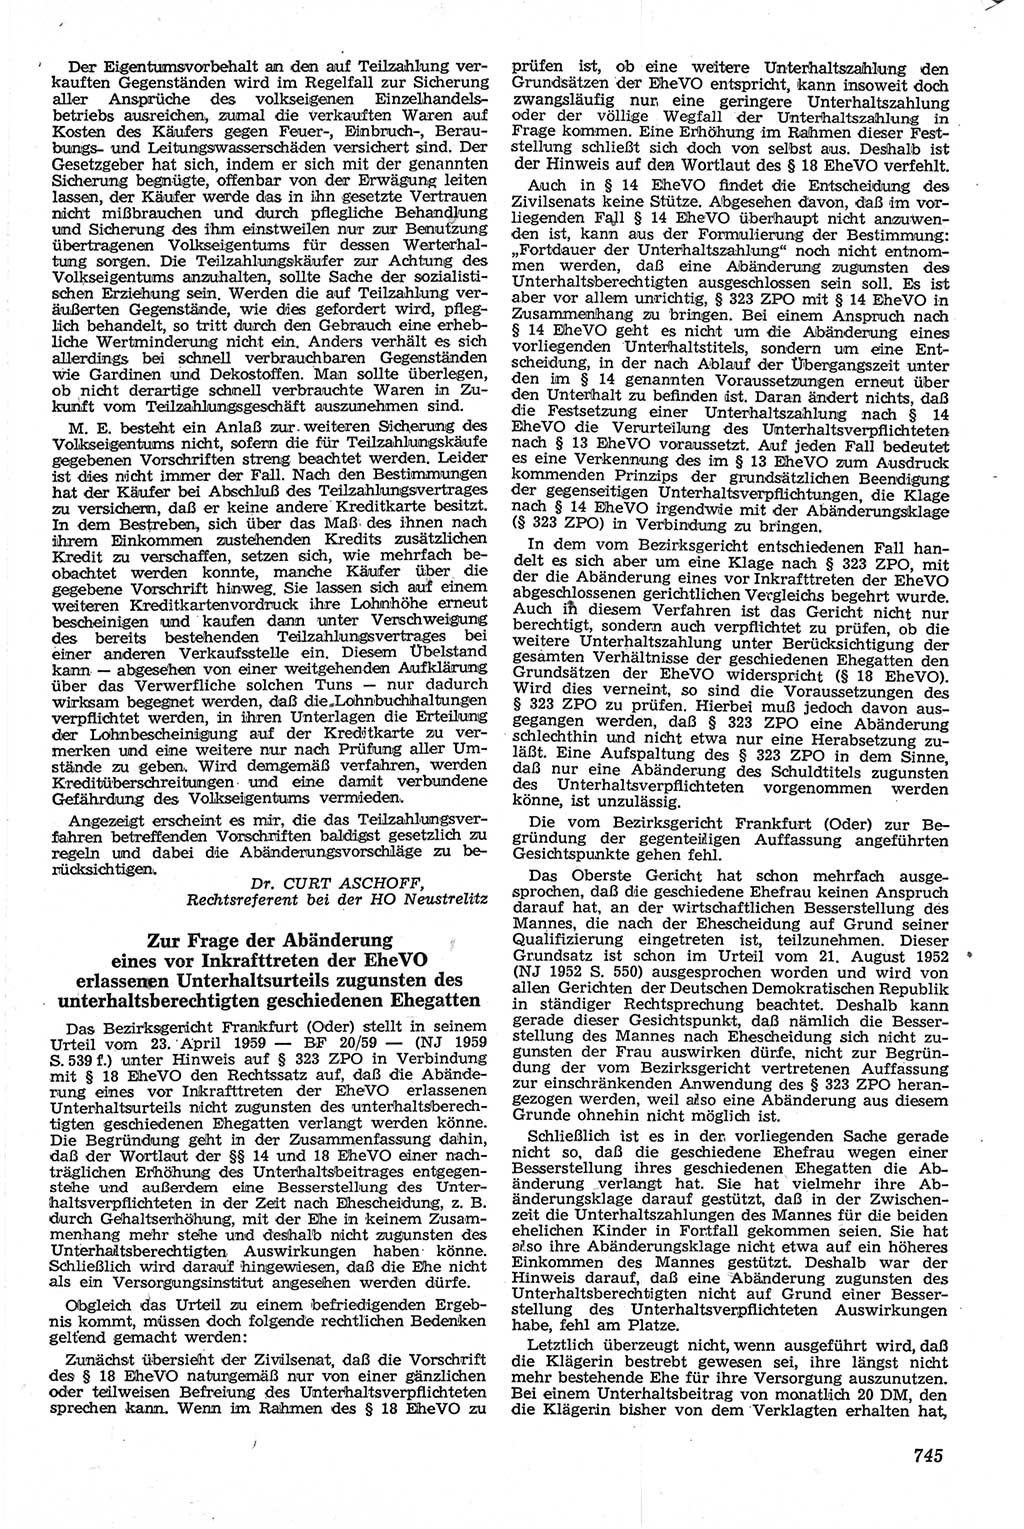 Neue Justiz (NJ), Zeitschrift für Recht und Rechtswissenschaft [Deutsche Demokratische Republik (DDR)], 13. Jahrgang 1959, Seite 745 (NJ DDR 1959, S. 745)